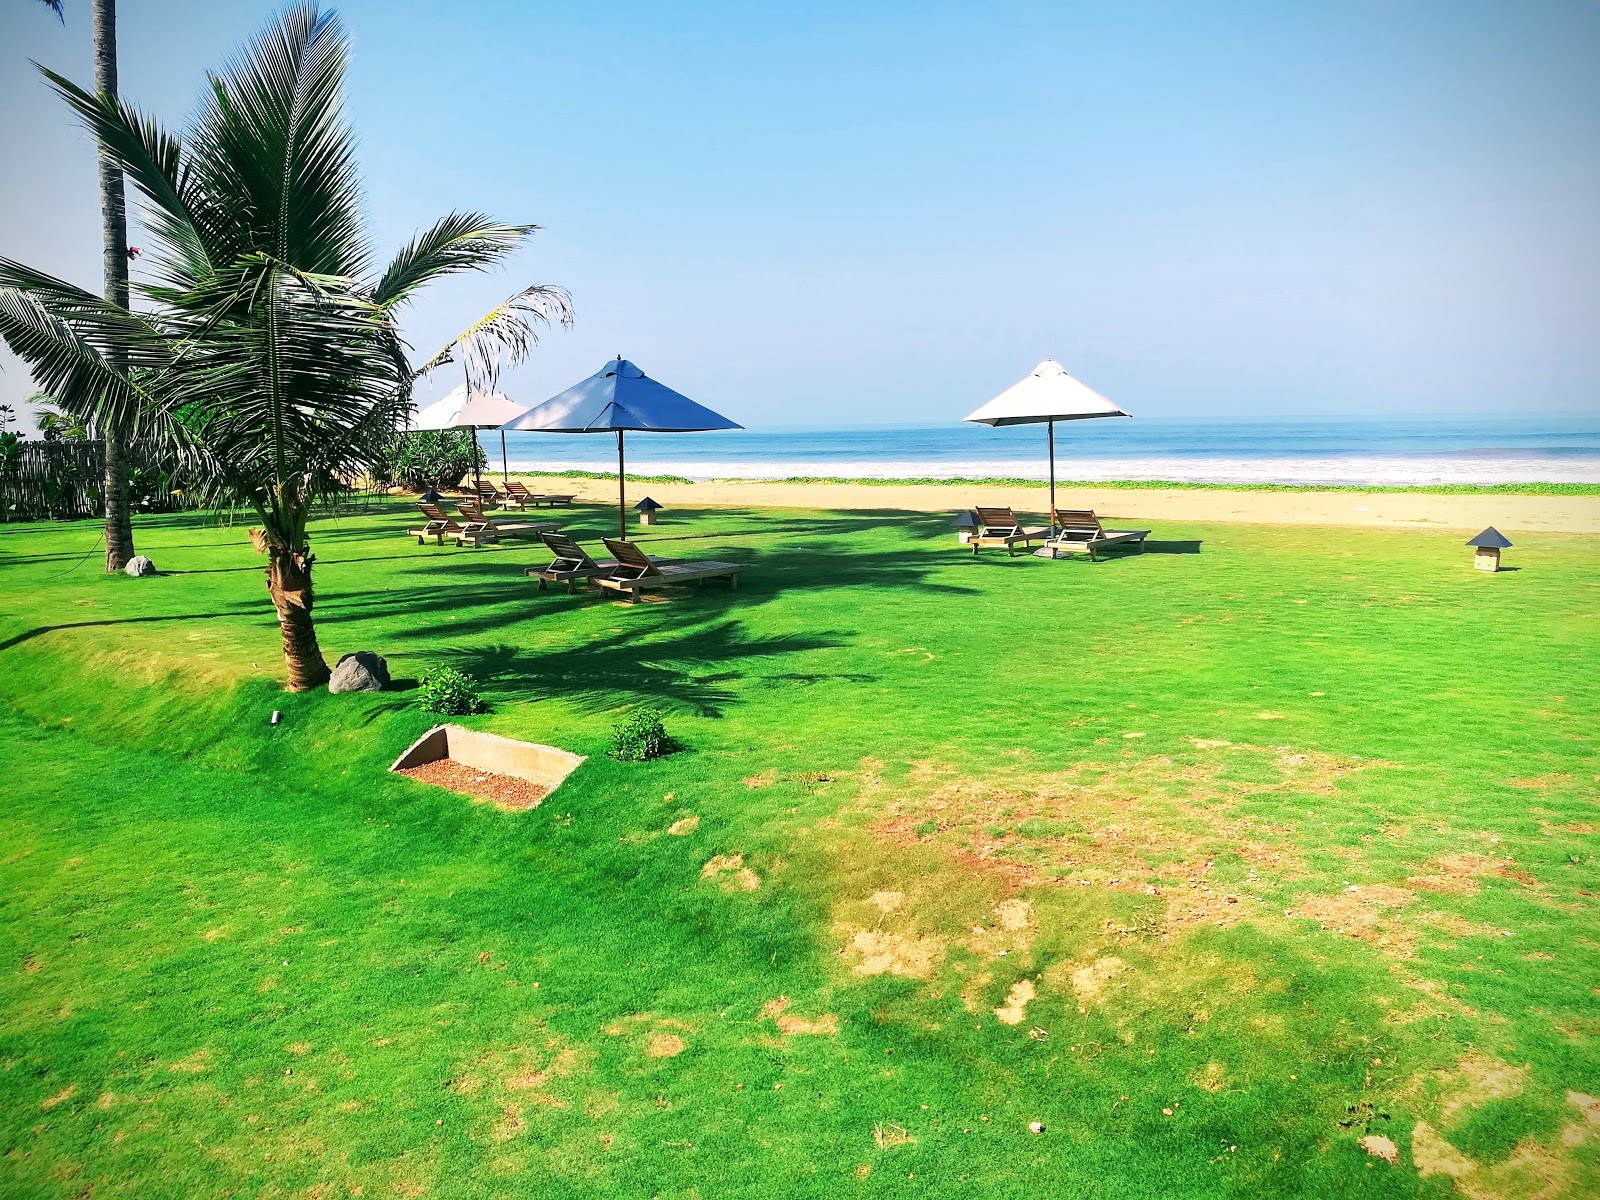 Fotografie cu Dolphin hotel beach - locul popular printre cunoscătorii de relaxare